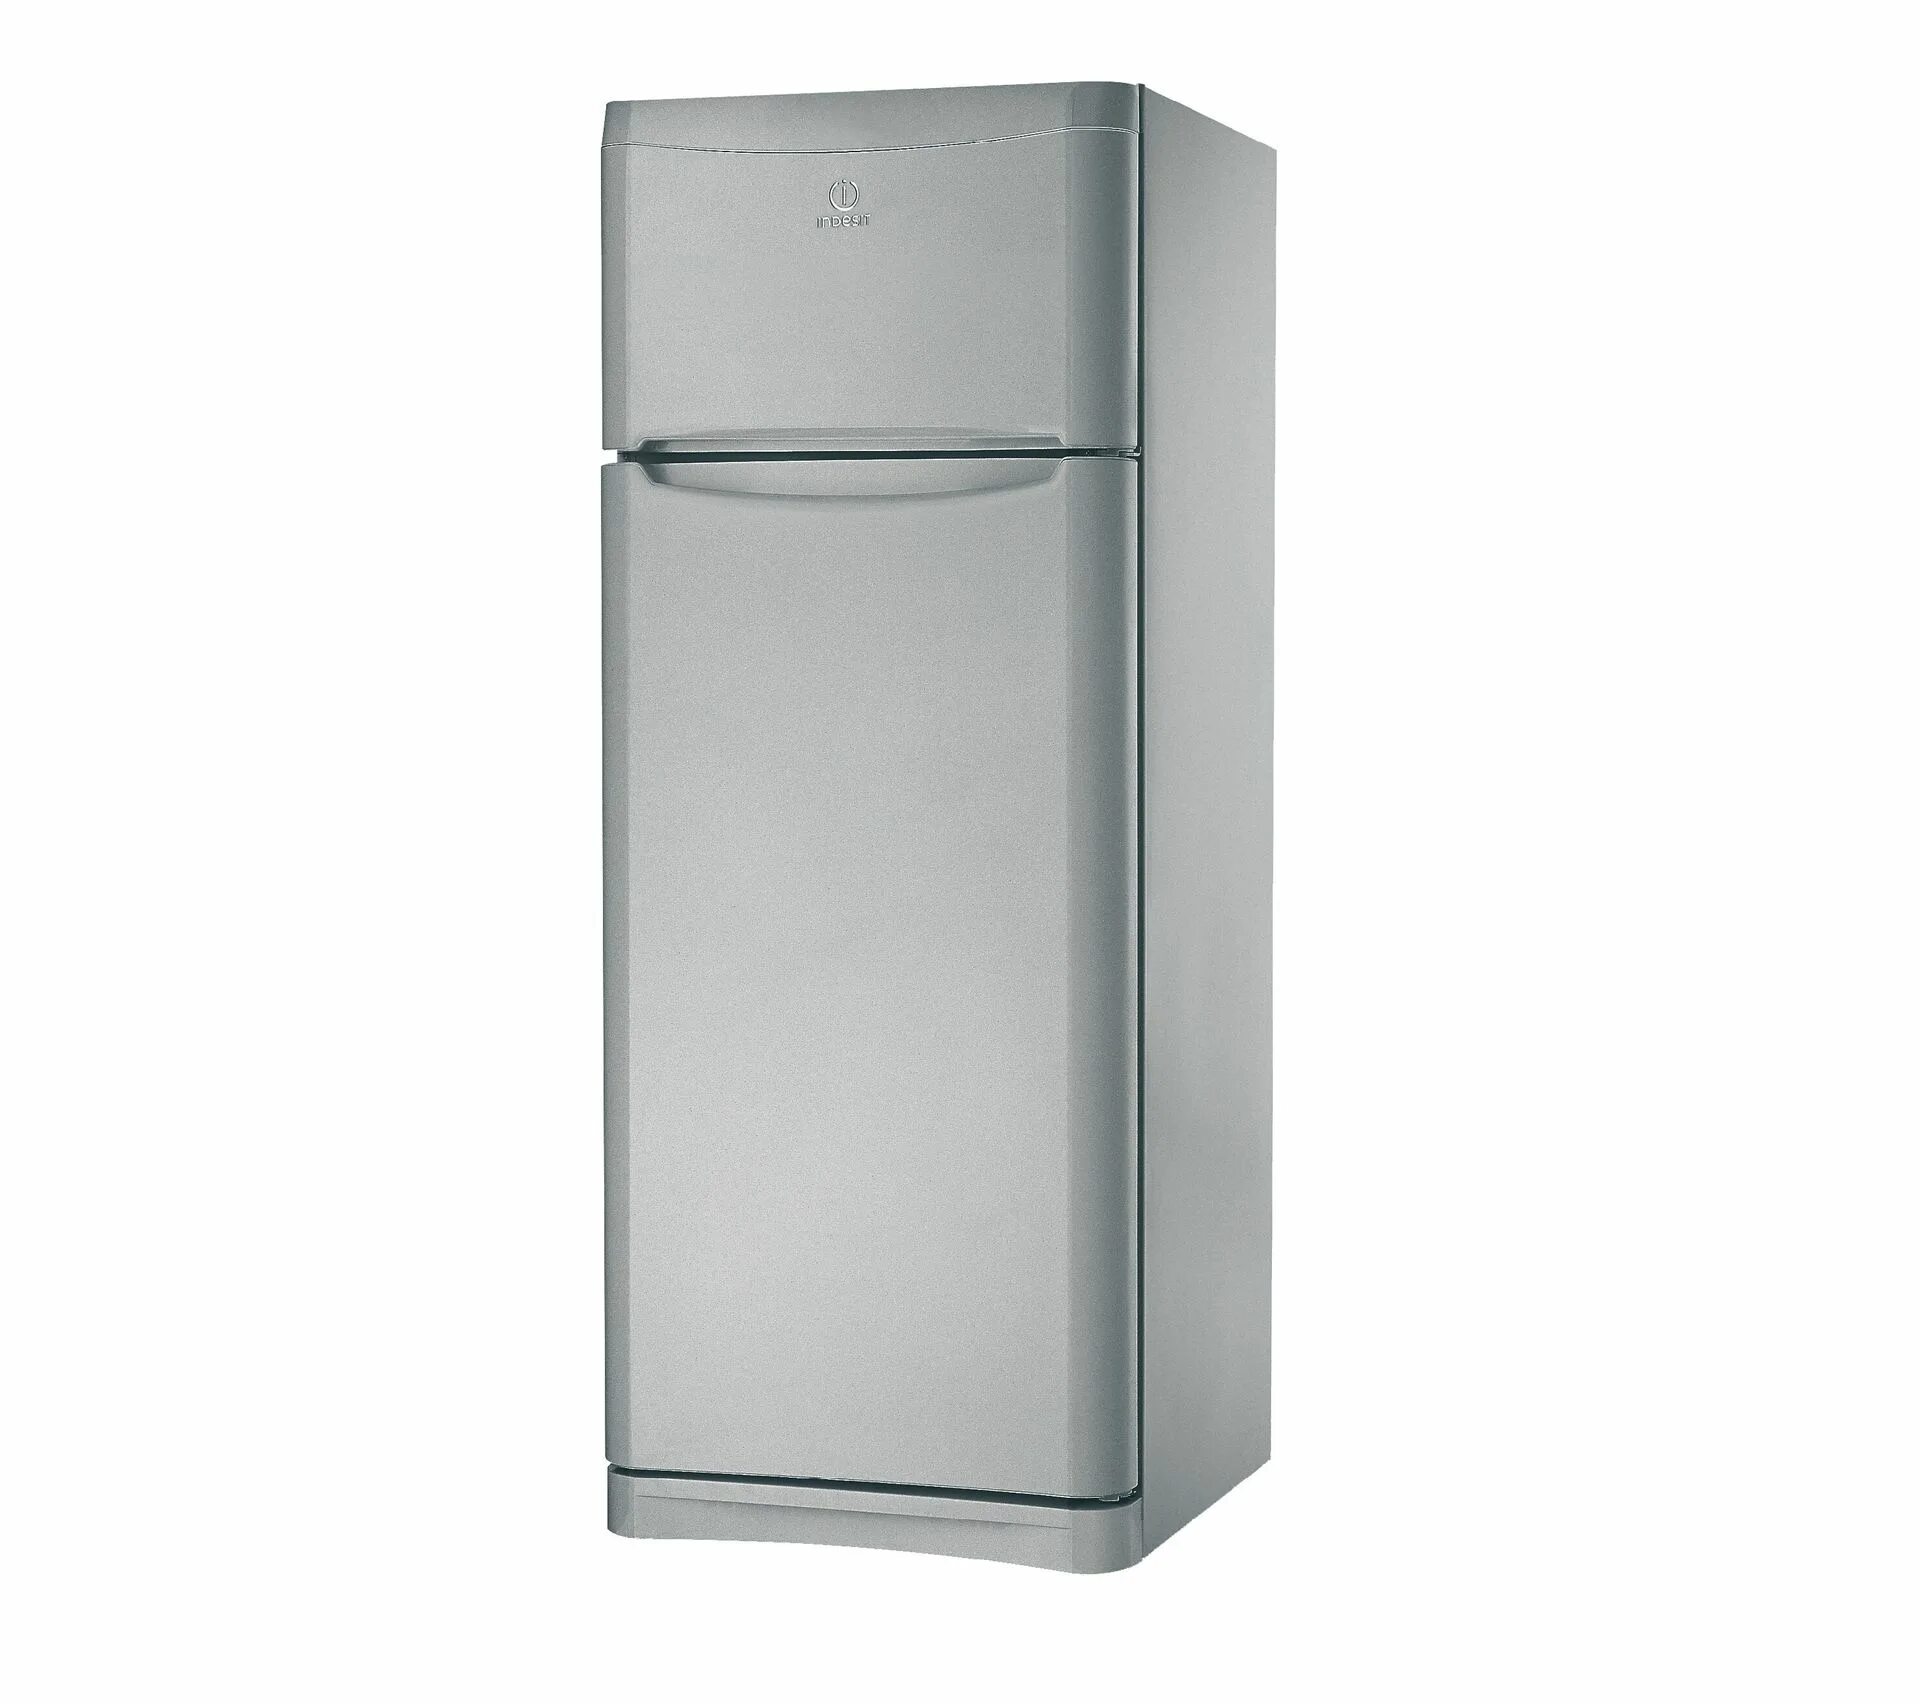 Рейтинг холодильников no frost. Холодильник Индезит ноу Фрост. Индезит no Frost холодильник 188 см.